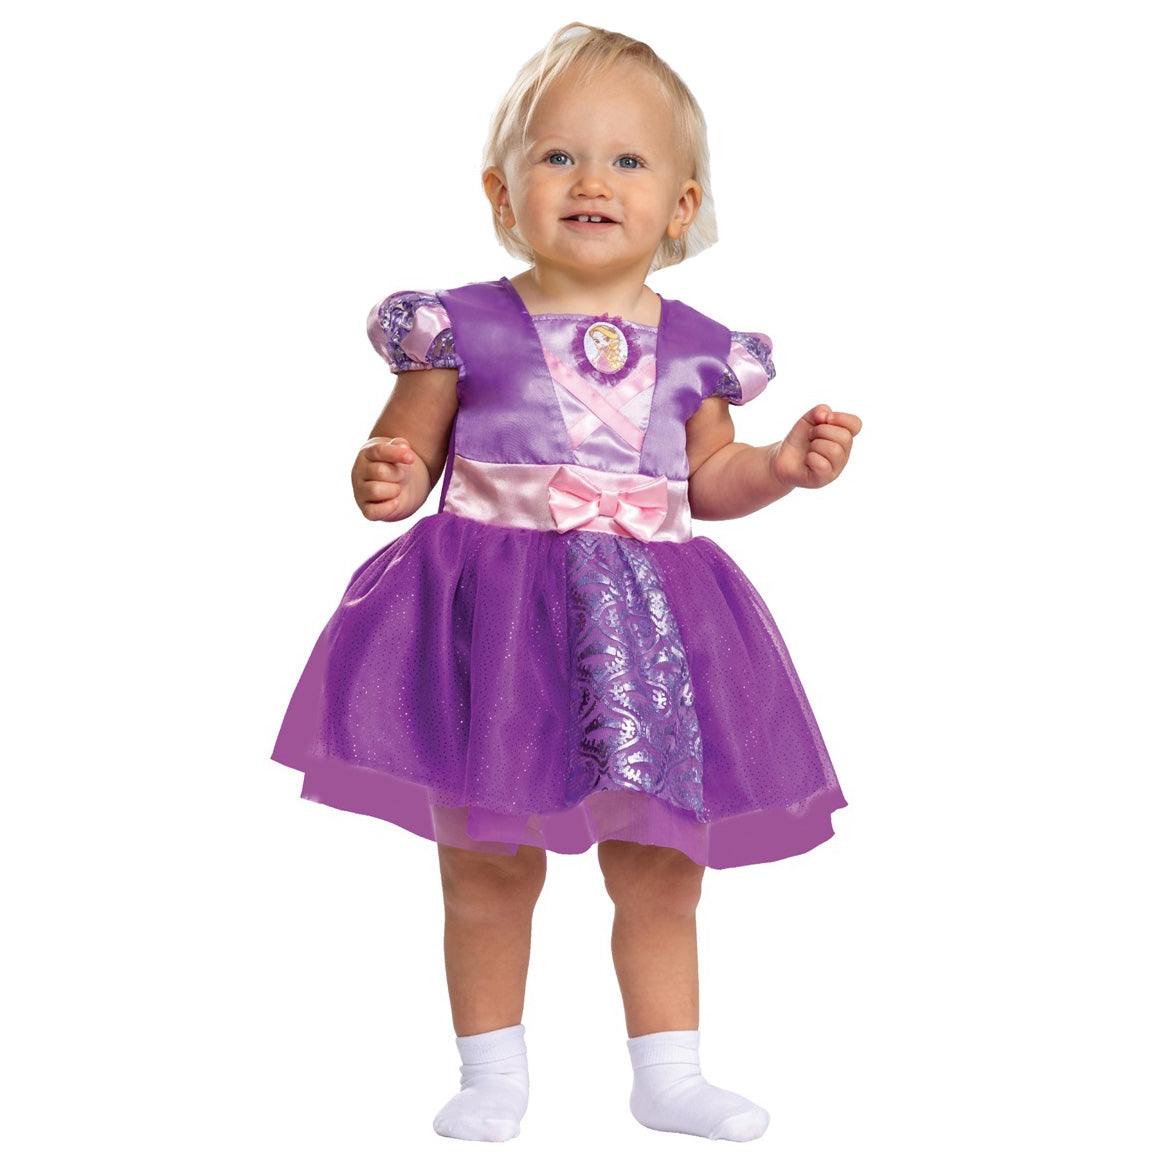 أزياء تنكرية  للأطفال الرضع بتصميم كلاسيكي على شكل شخصية رابونزيل من أميرات ديزني  - Party Centre